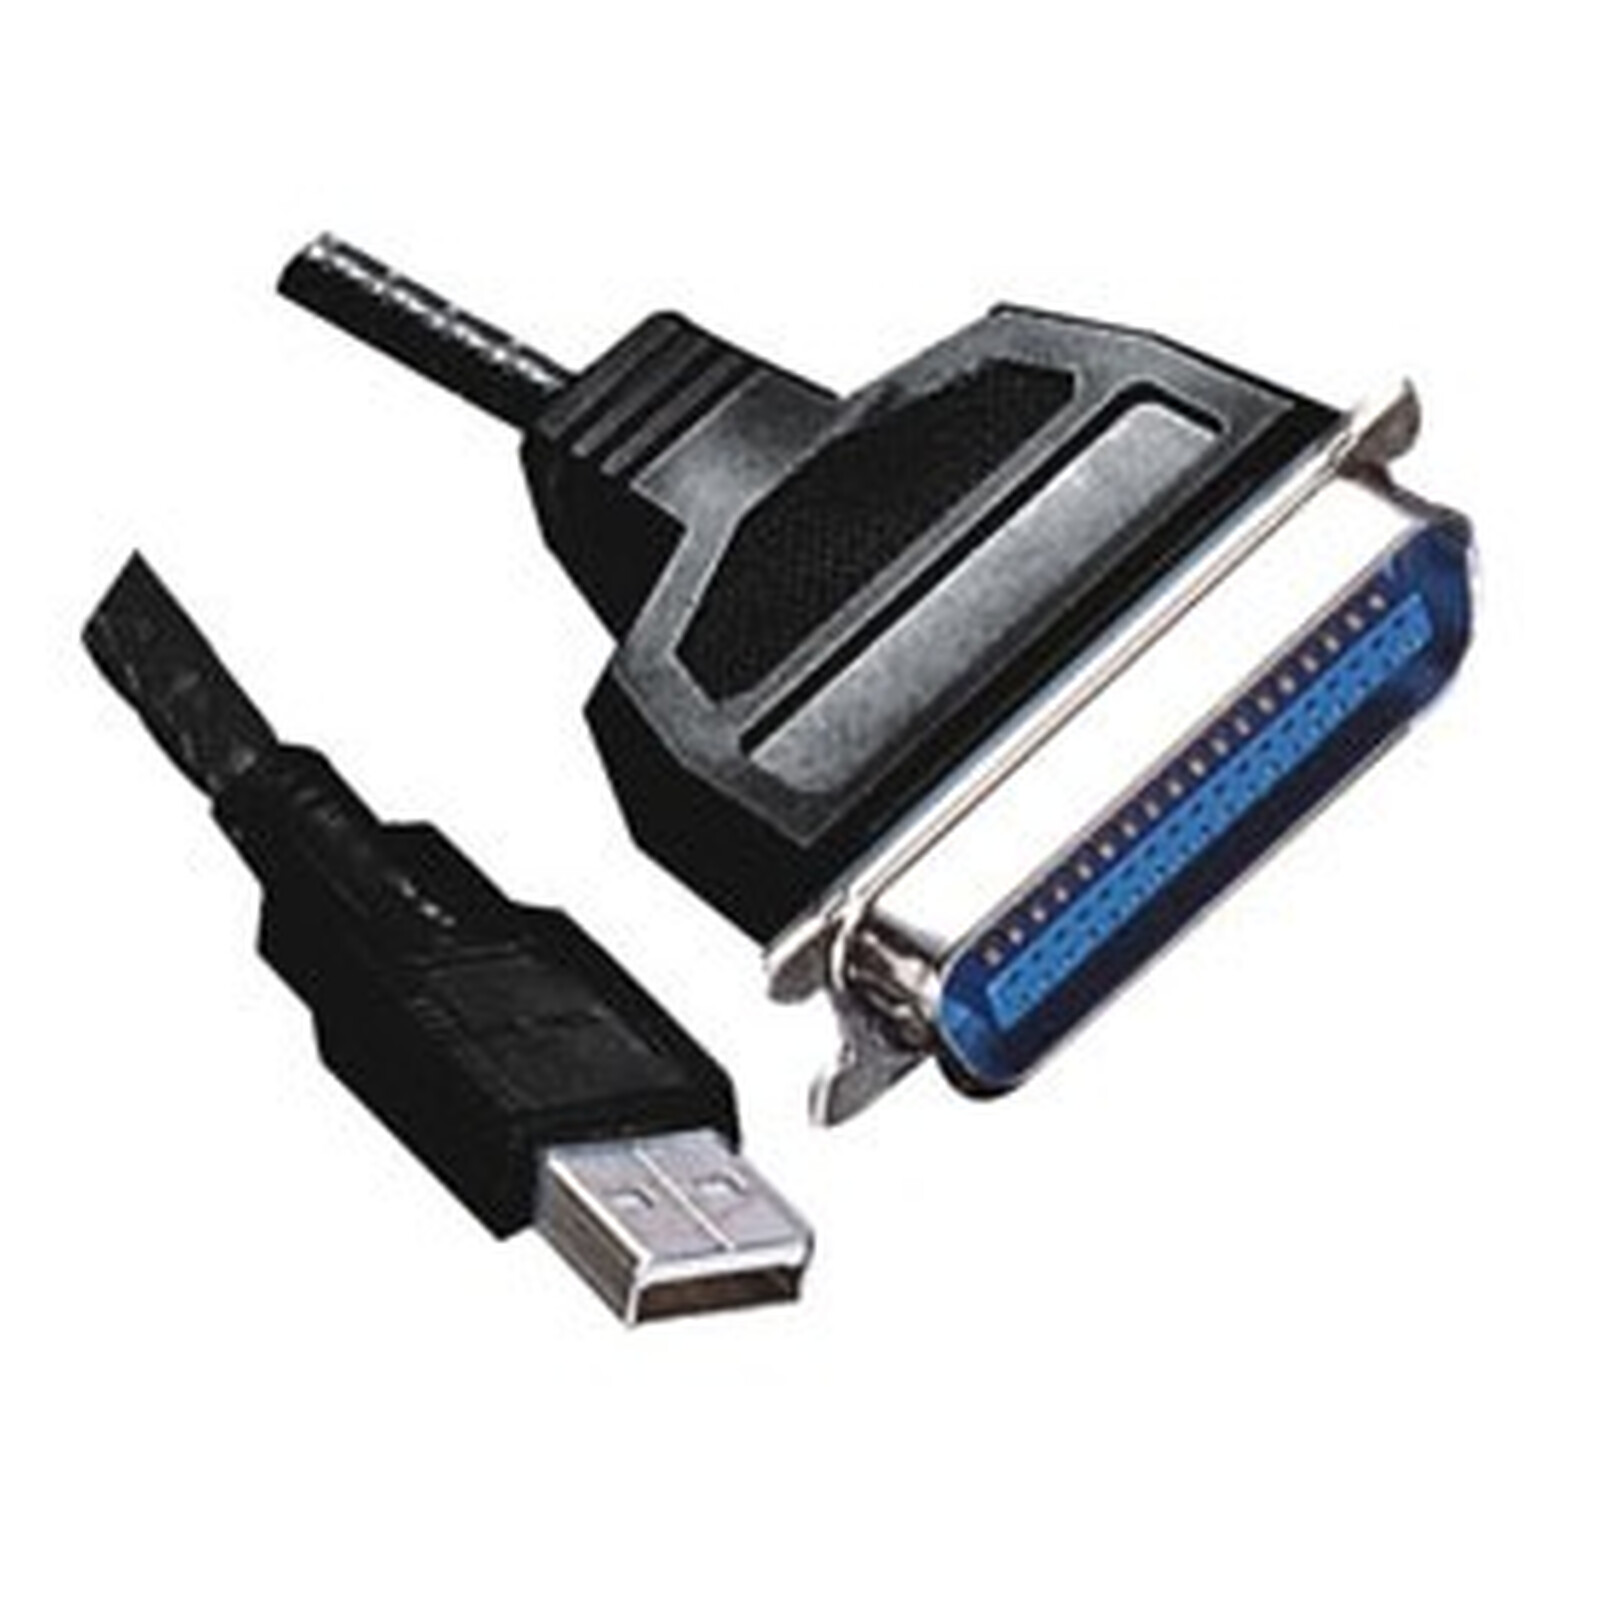 Pensez-y : câble USB pour imprimante - Les Numériques